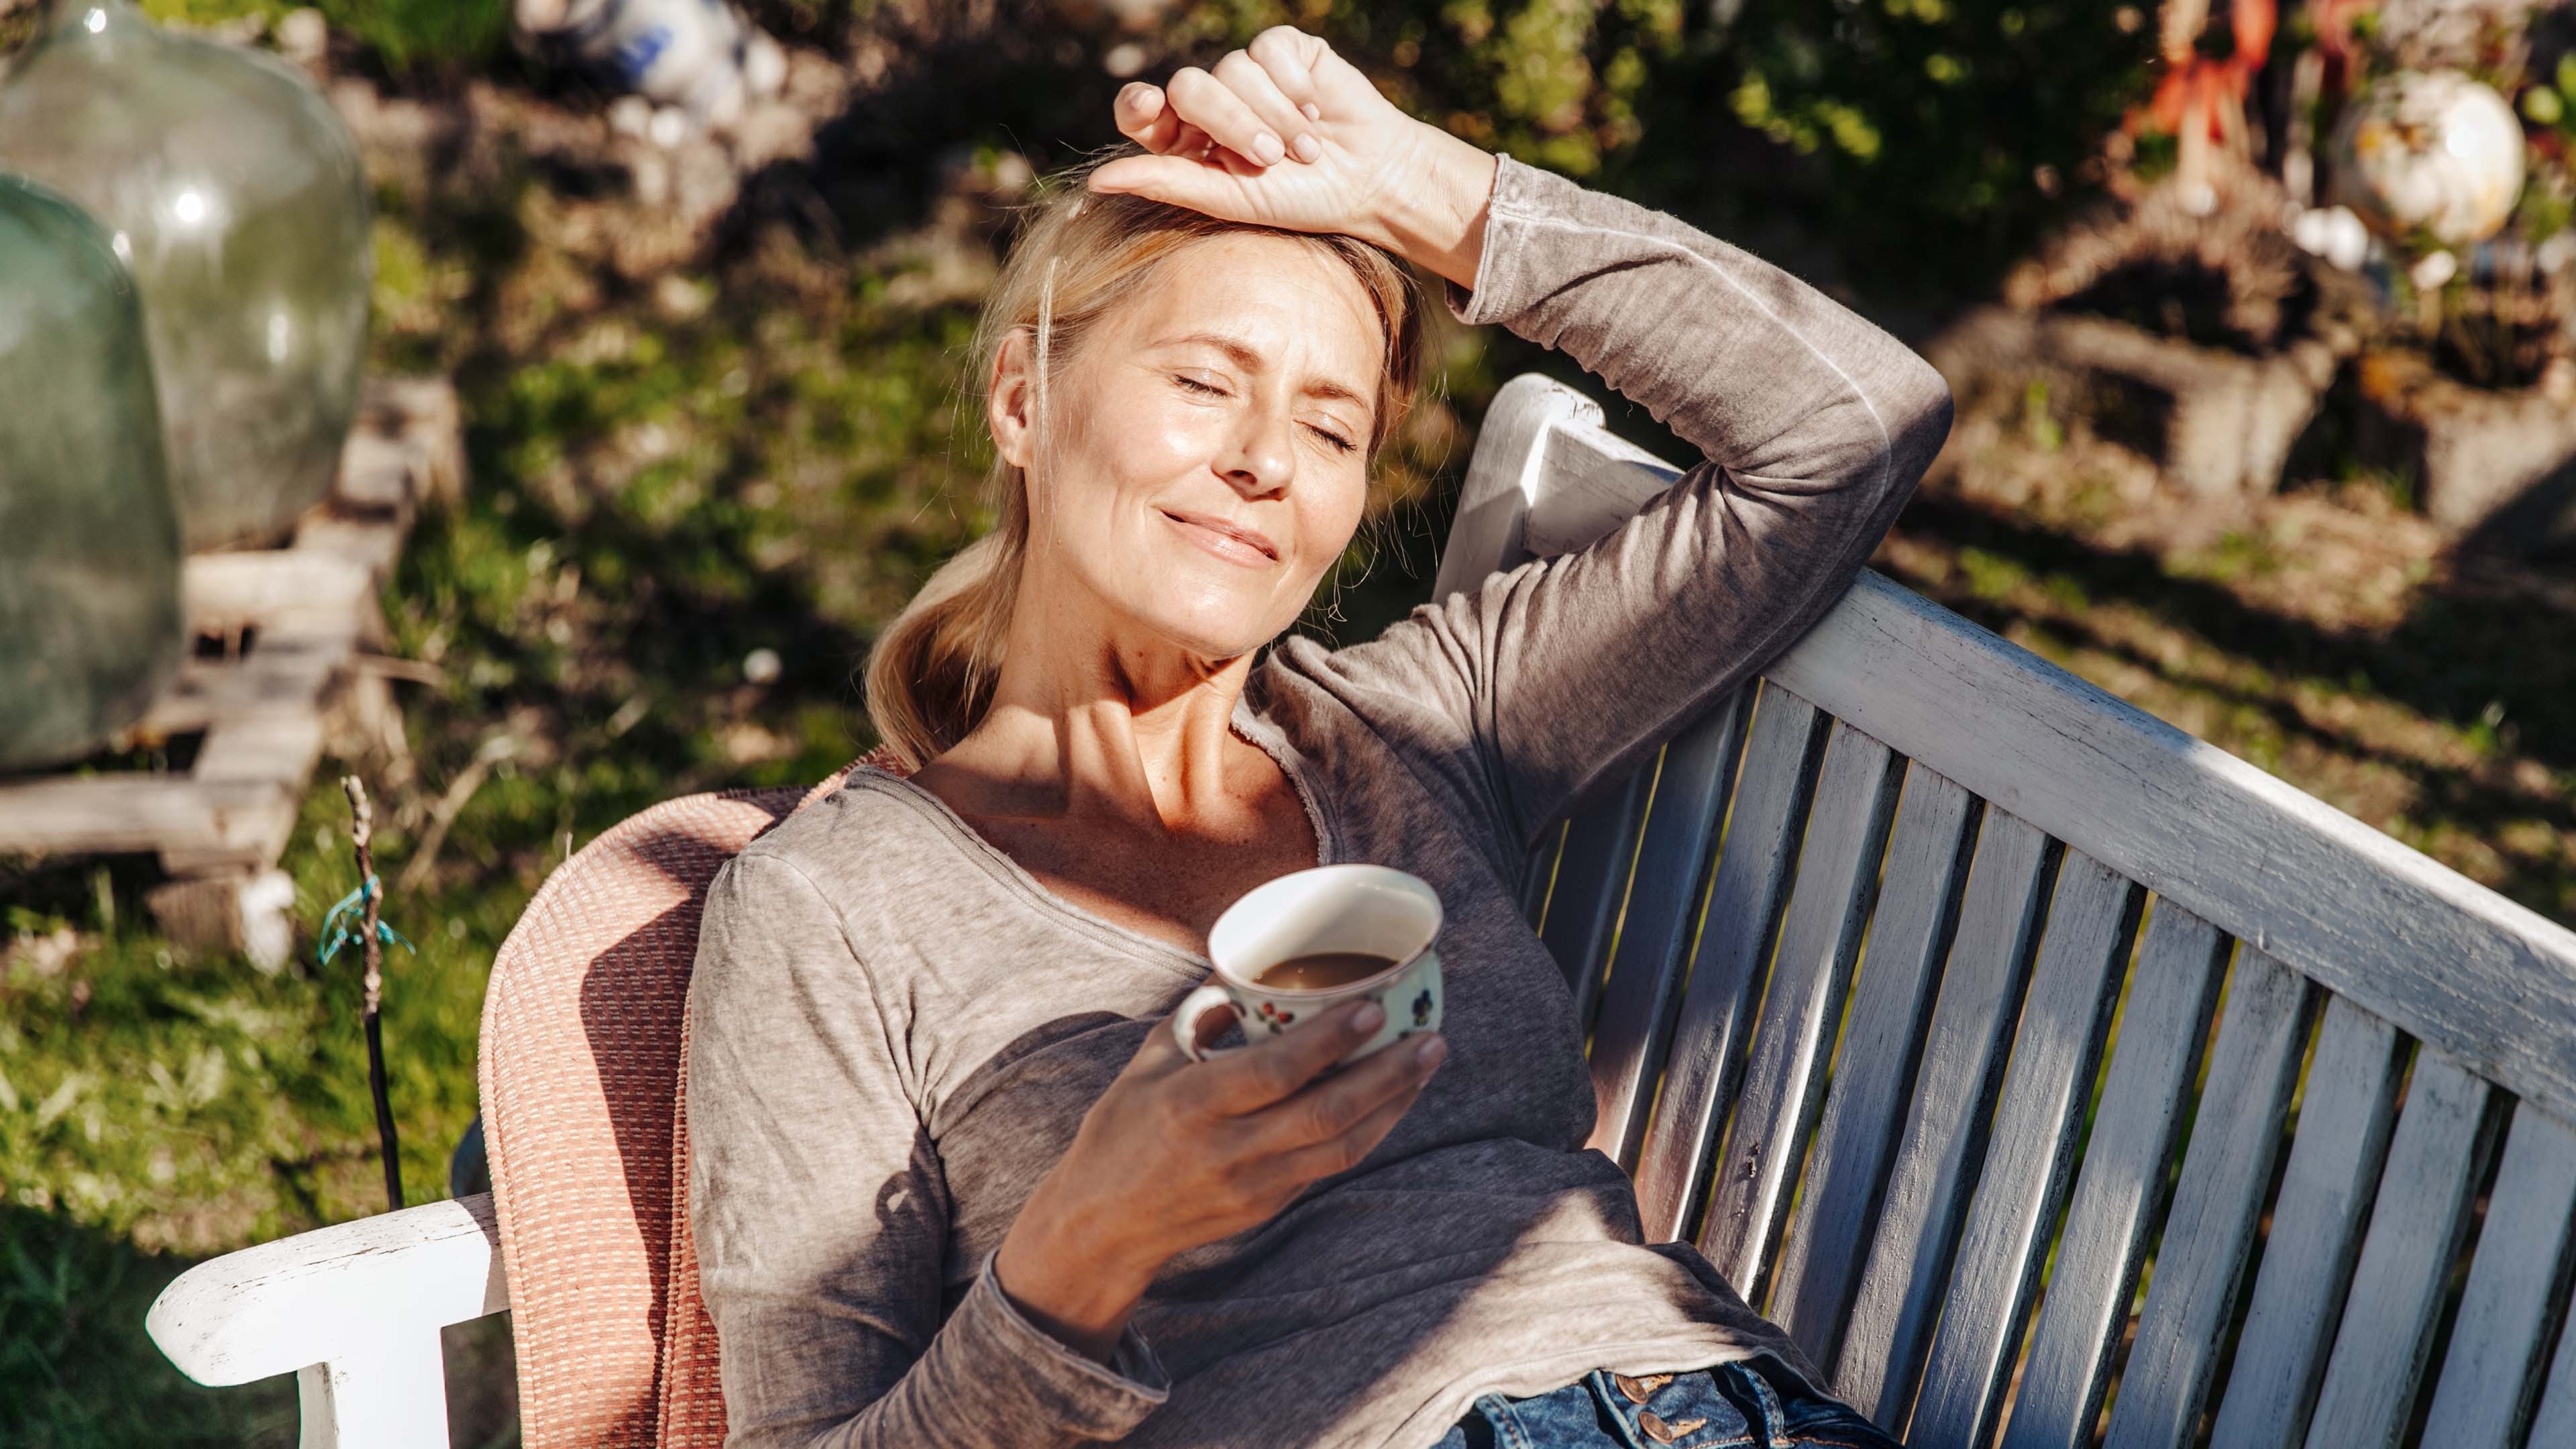 Frau liegt auf einer Bank mit einem Tee in der Hand und freut sich auf ihre Frühpensionierung